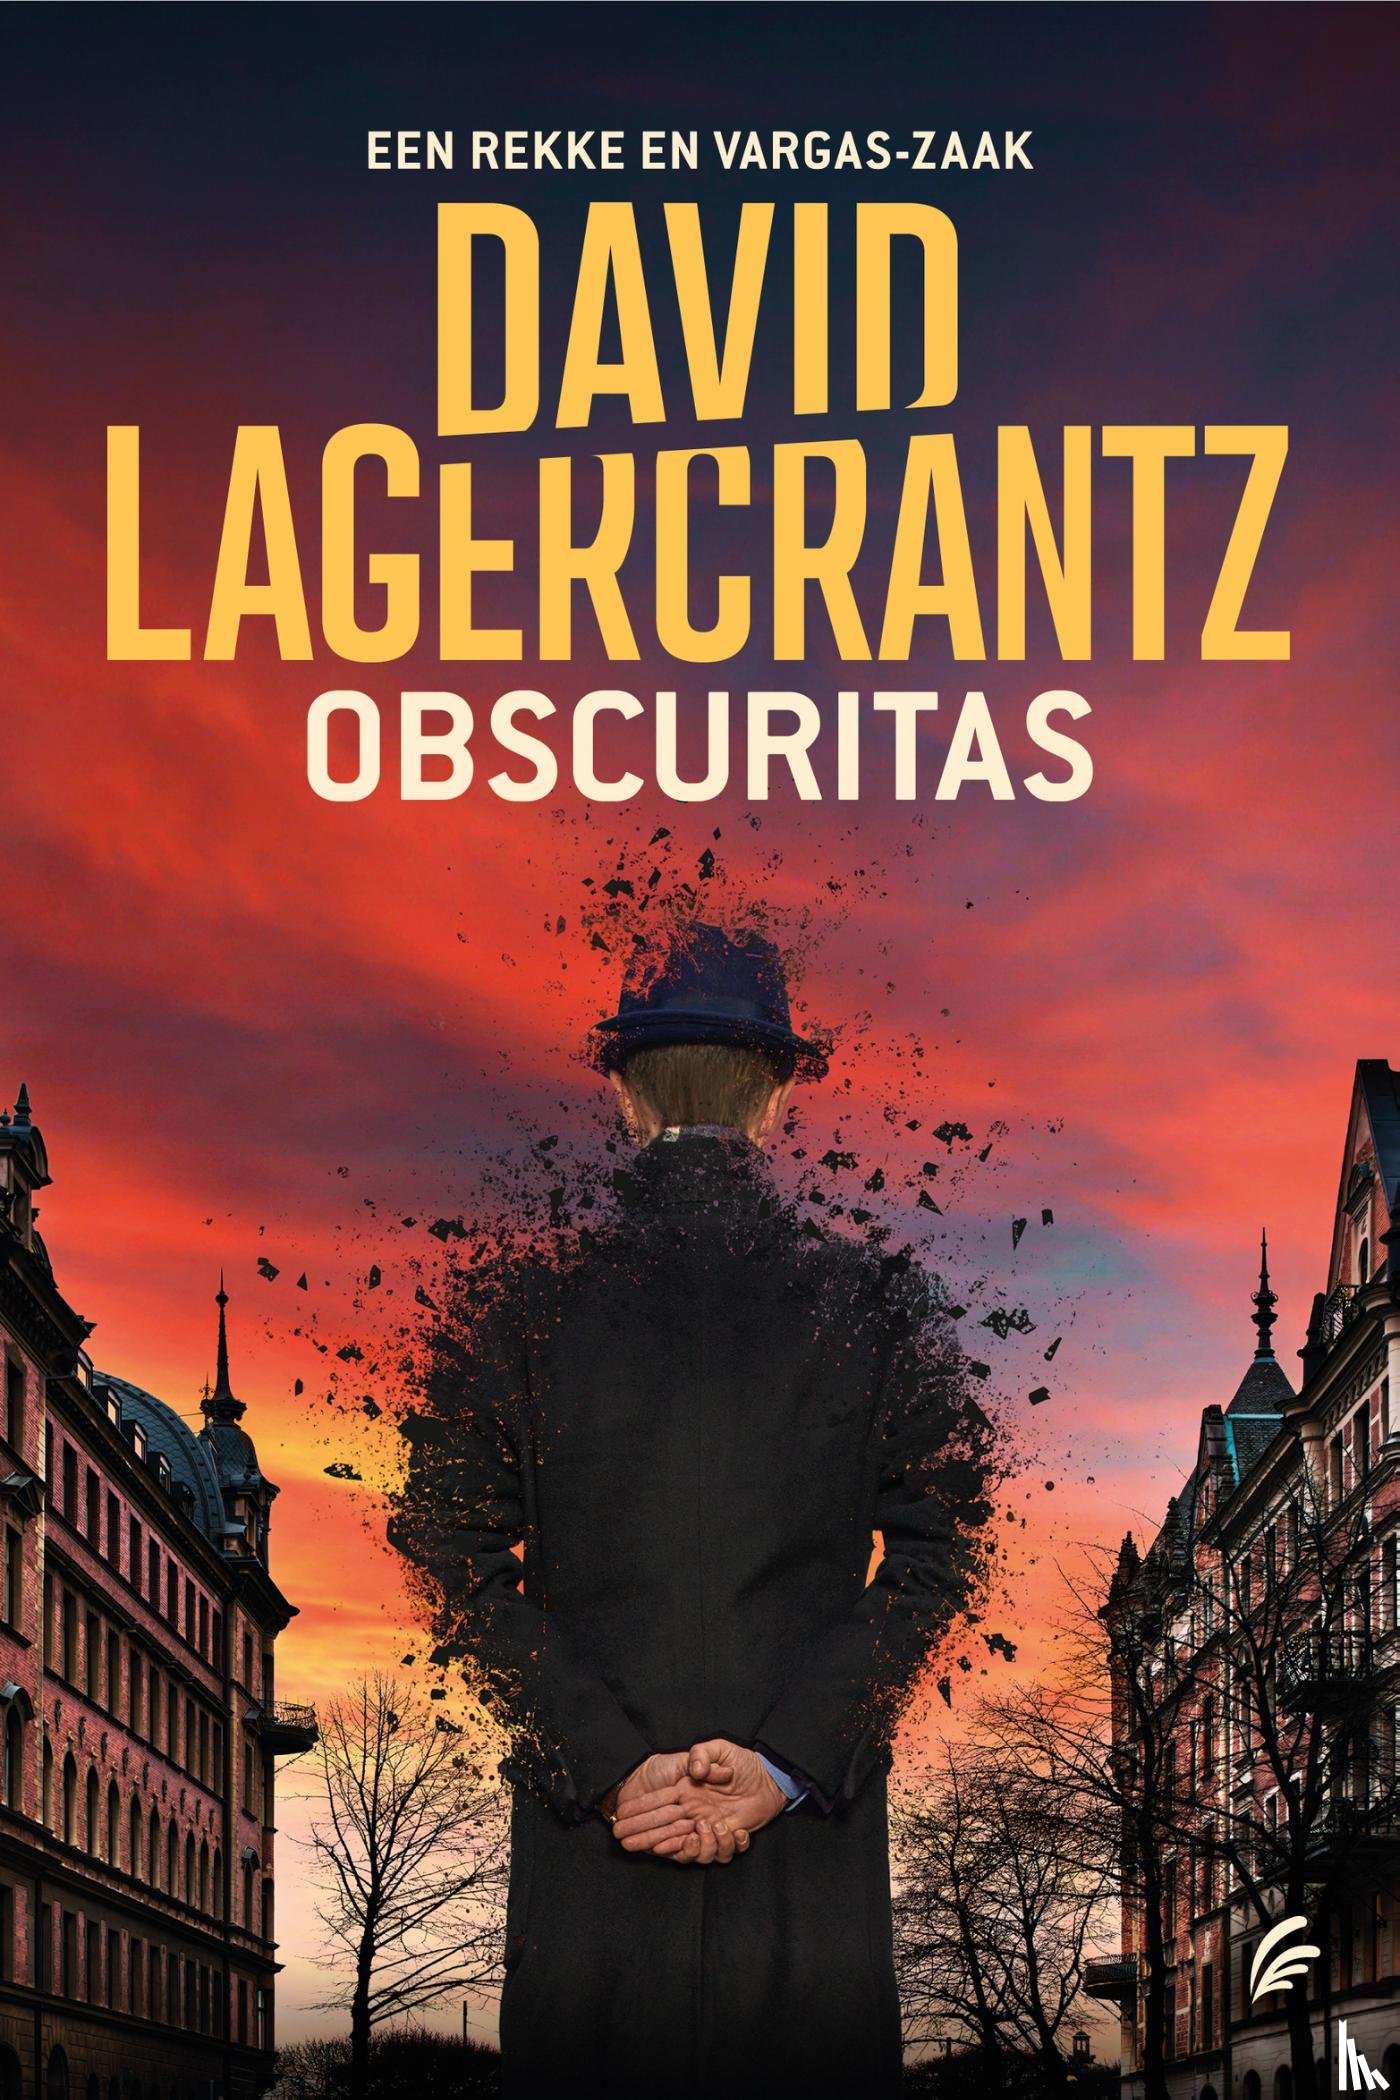 Lagercrantz, David - Obscuritas